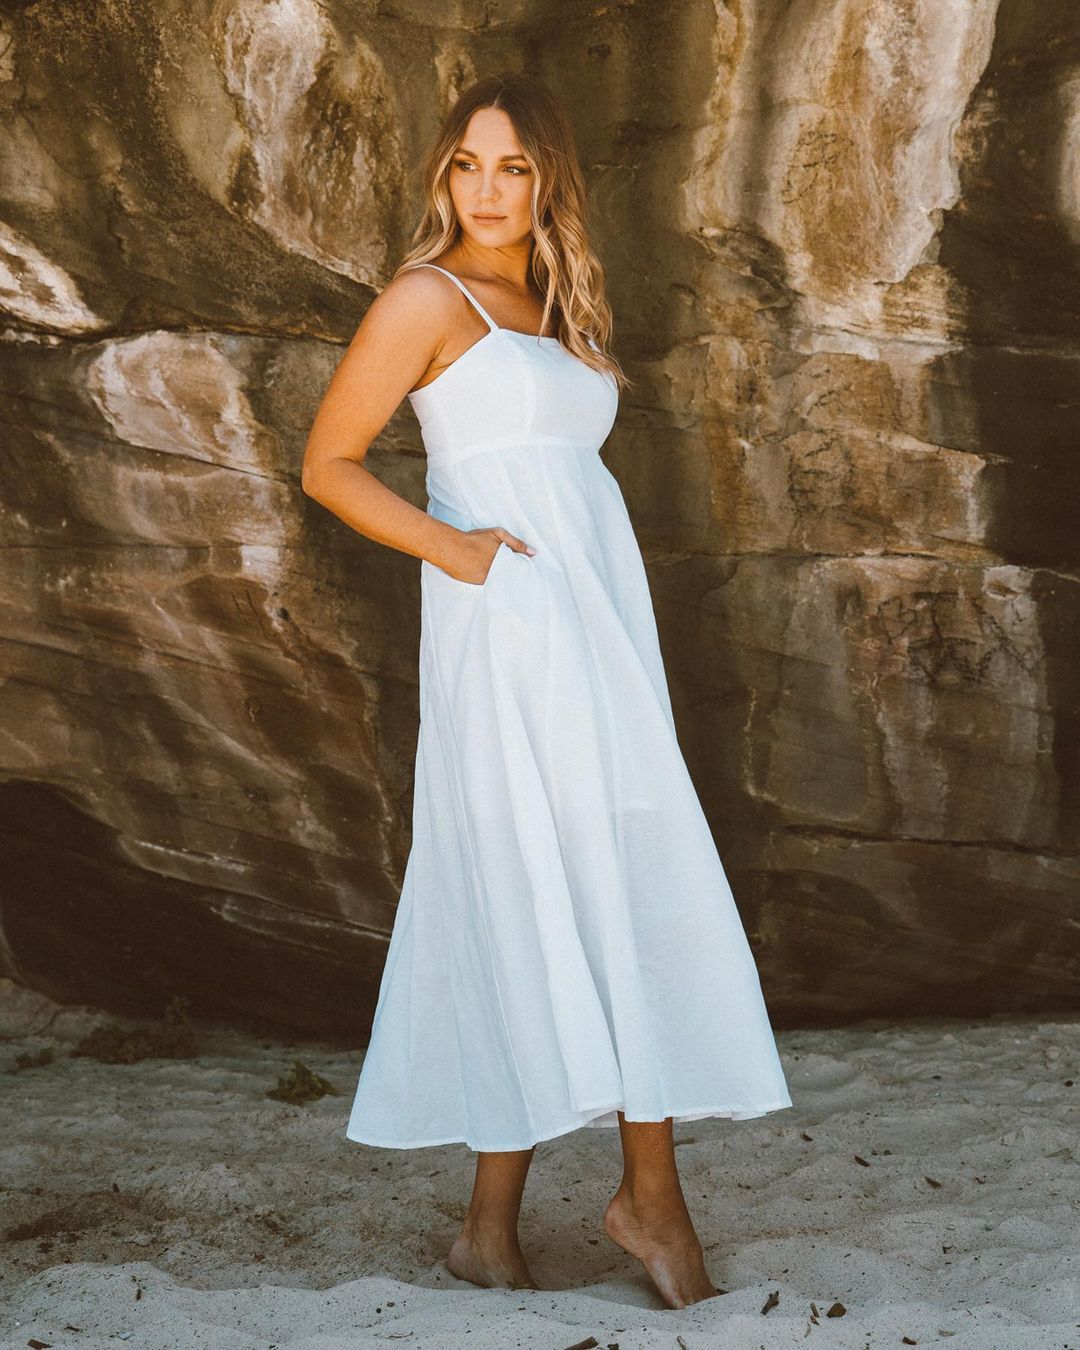 Leighton Dress - White - Ciao Bella Dresses